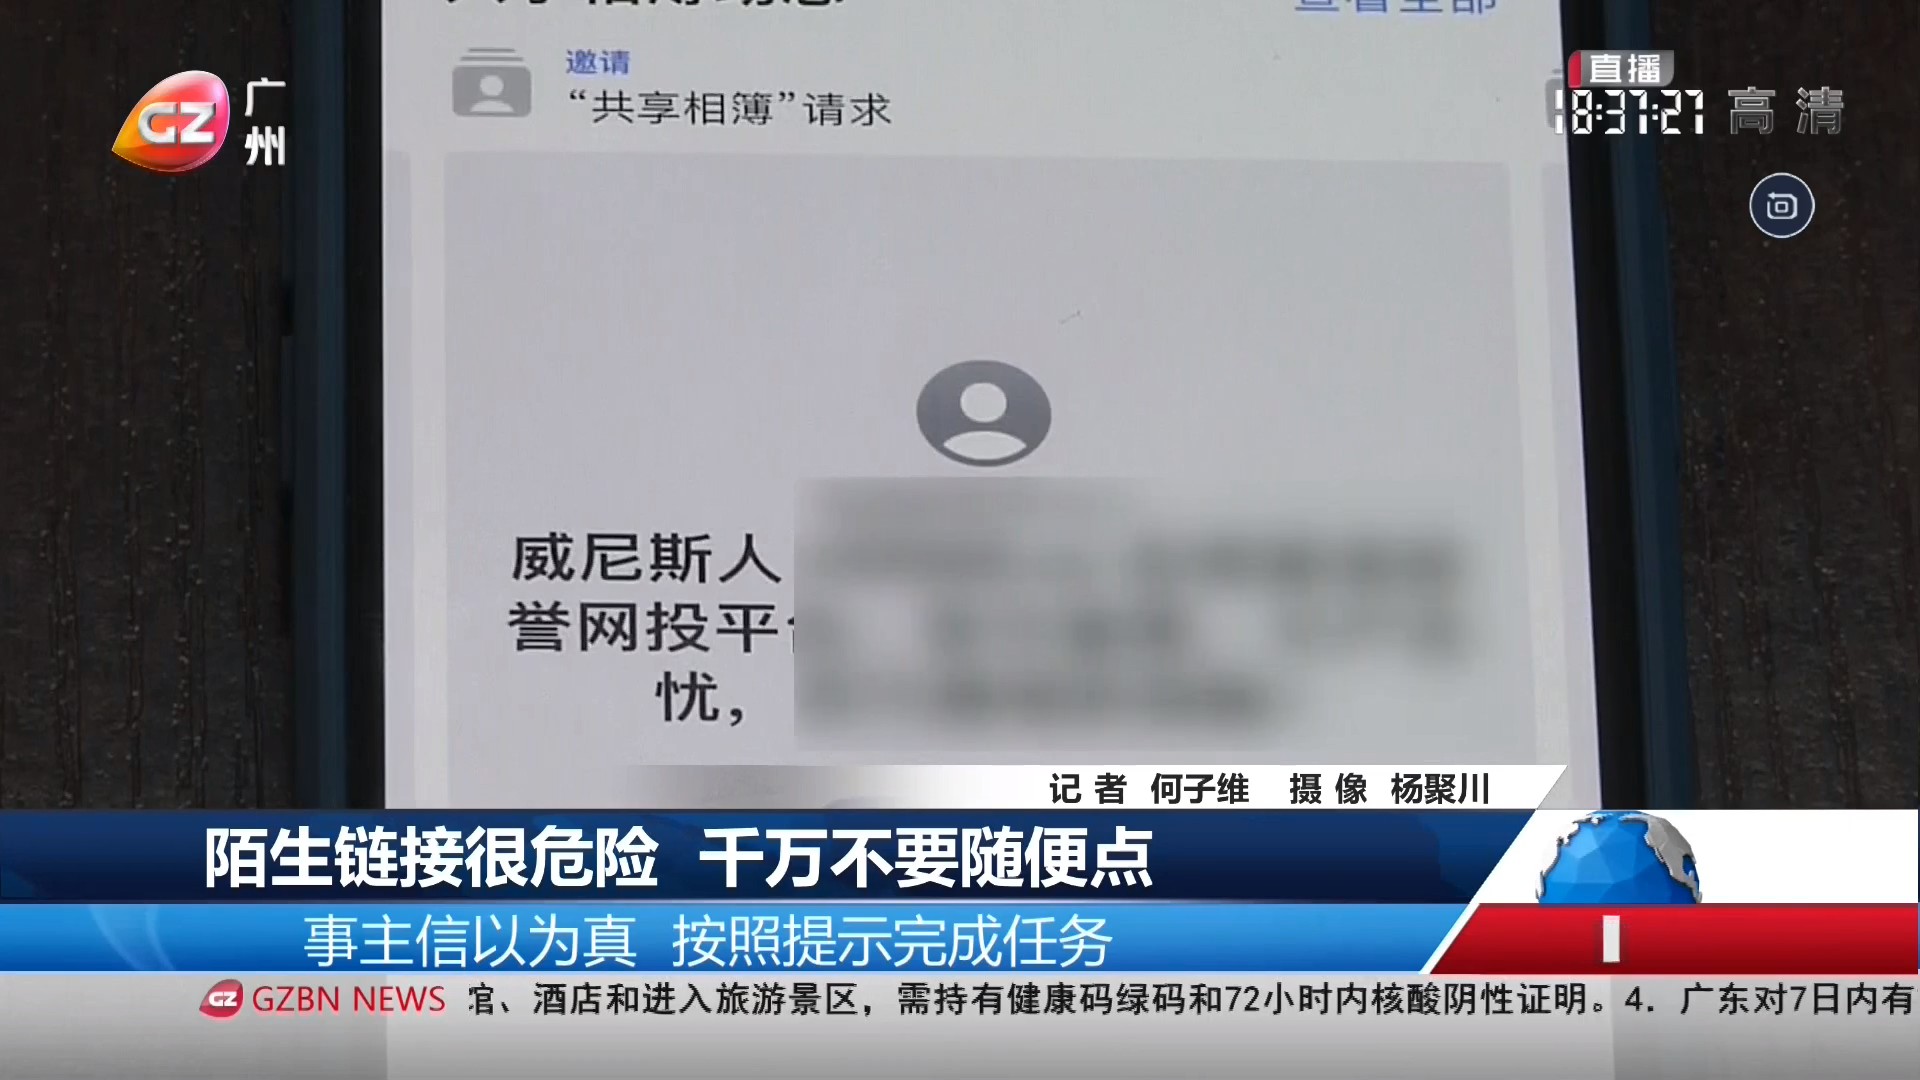 广州台综合频道 广视新闻 陌生链接很危险 千万不要随便点